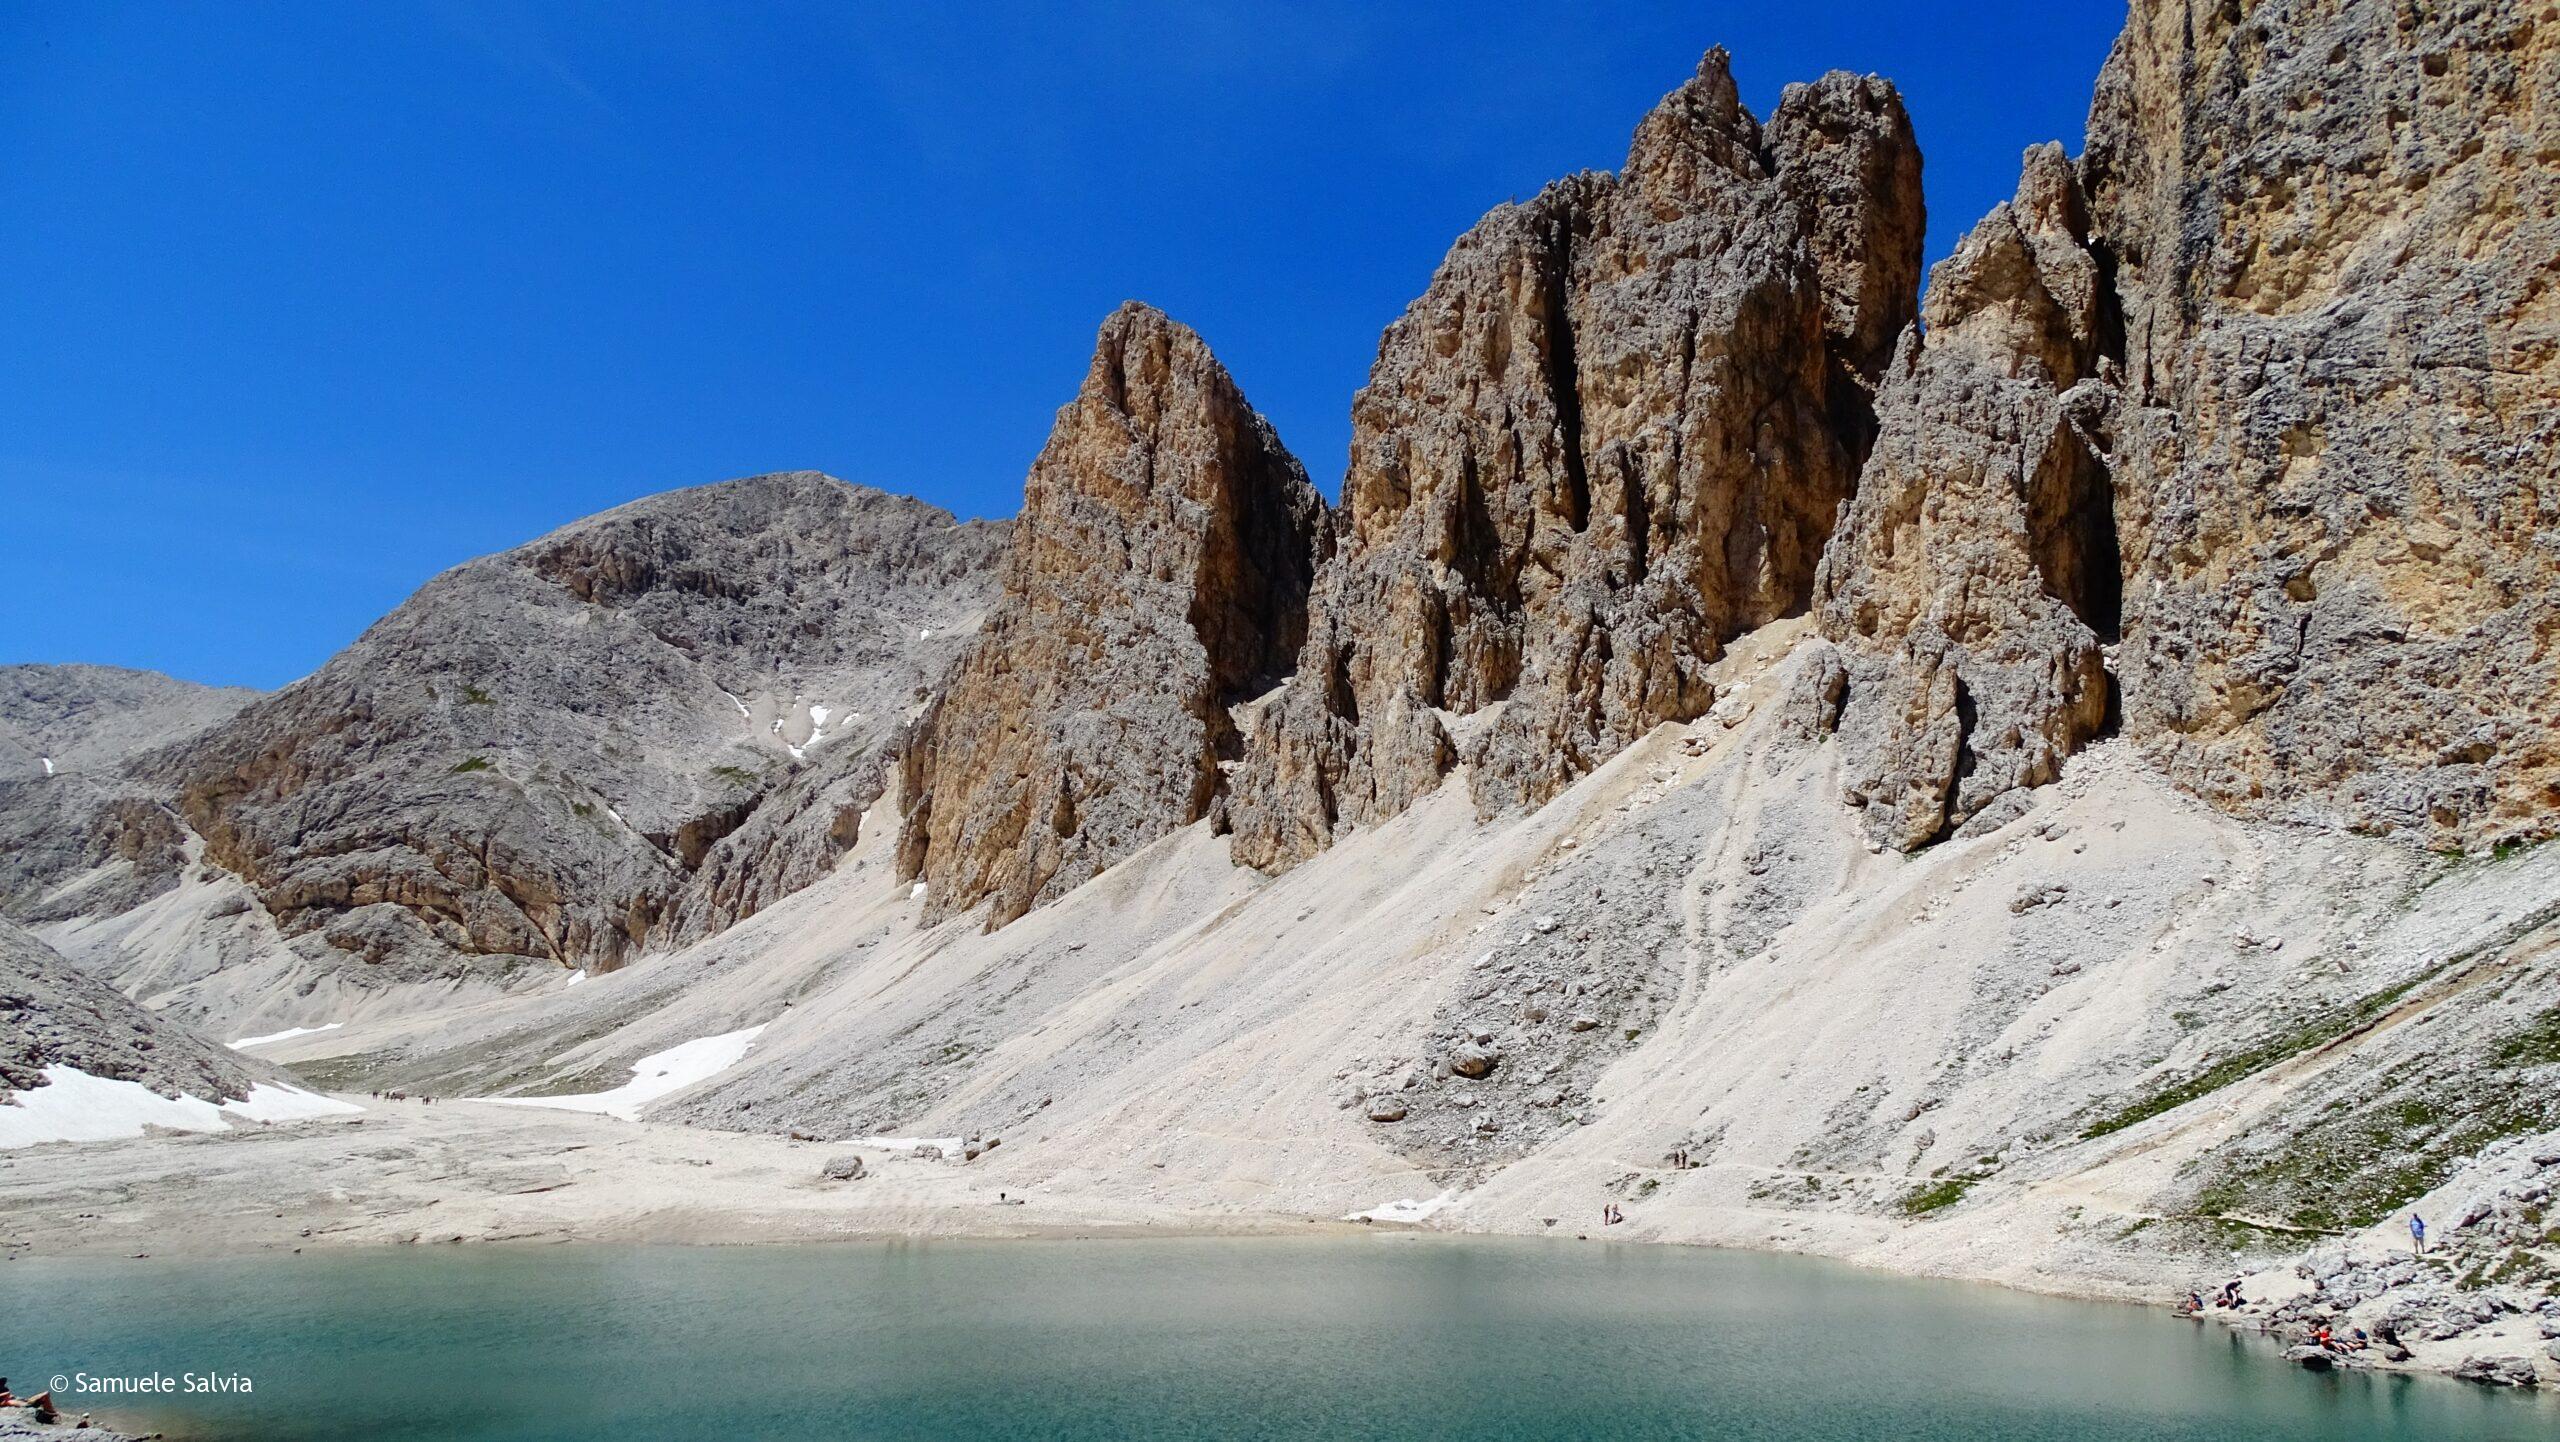 Il Lago di Antermoia, uno dei luoghi più suggestivi della Val di Fassa.